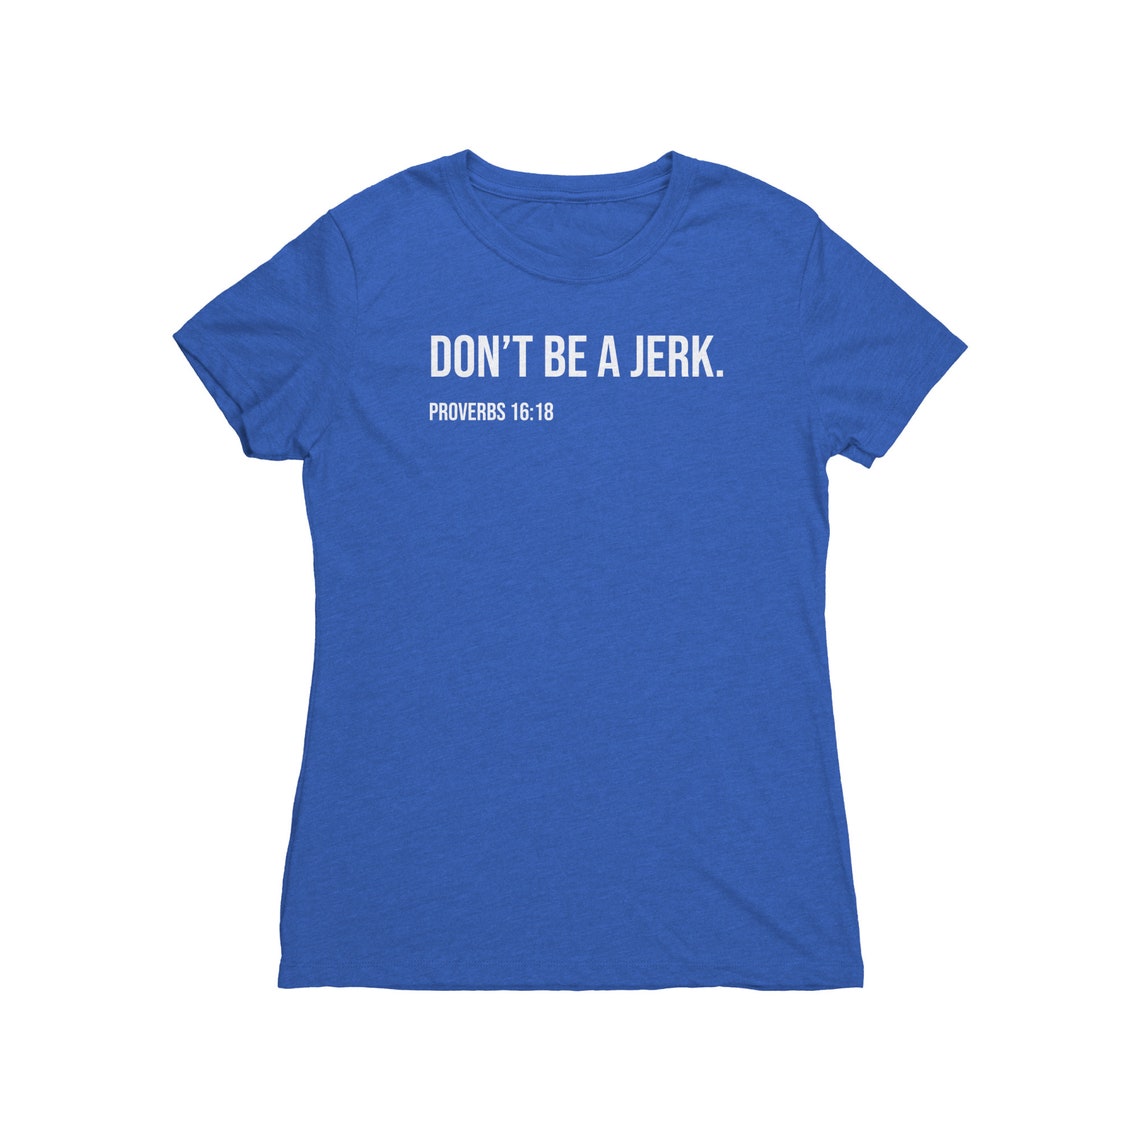 Proverbs 16:18 Women's T-Shirt Don't Be a Jerk. | Etsy